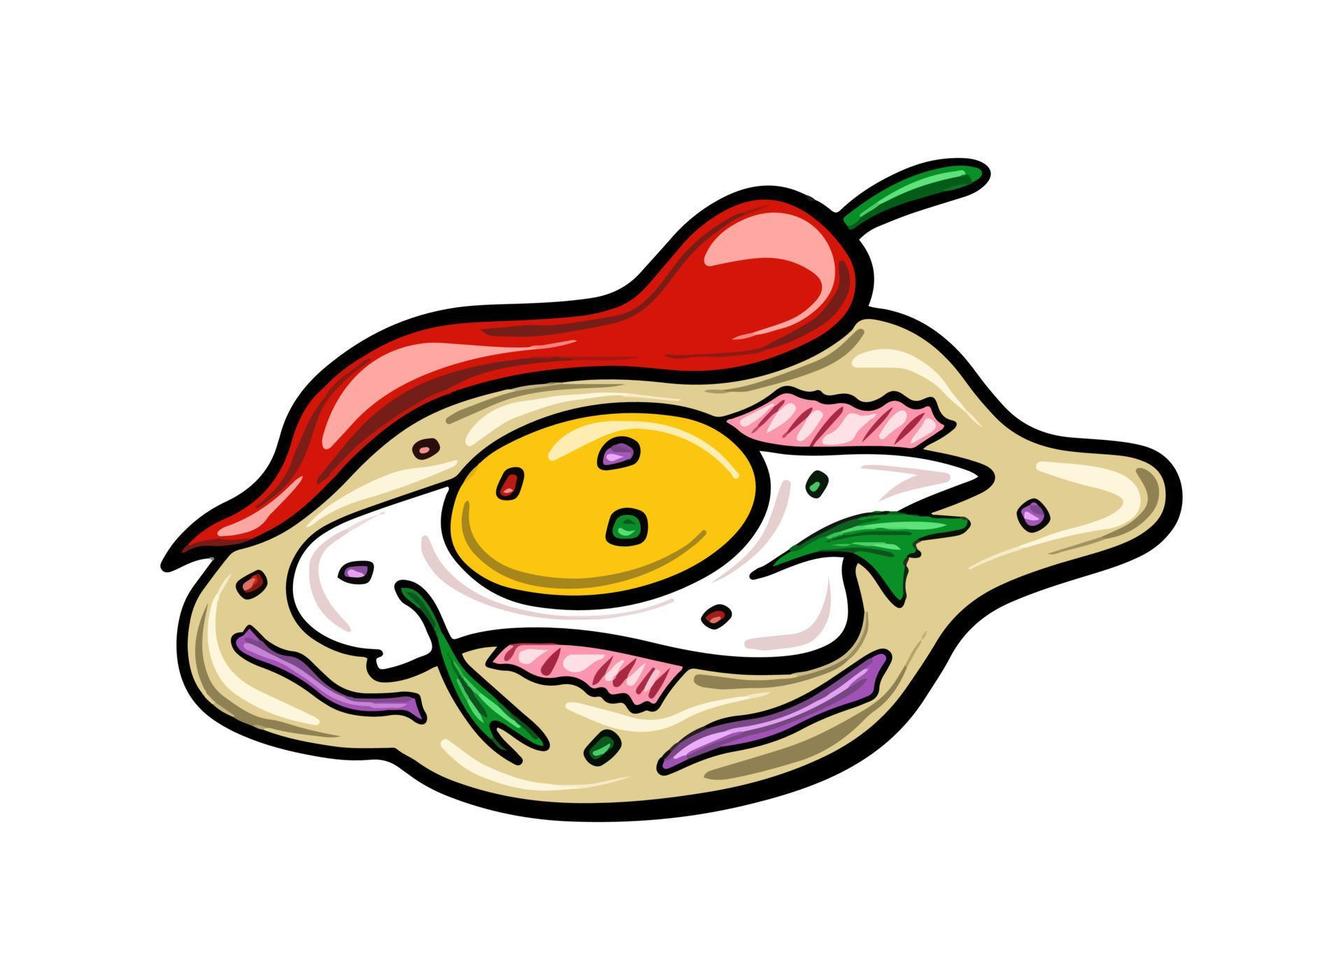 Vektor mexikanisches traditionelles Essen Burrito mit Eiern und Chilischoten in einem flachen Cartoon-Stil gezeichnet.